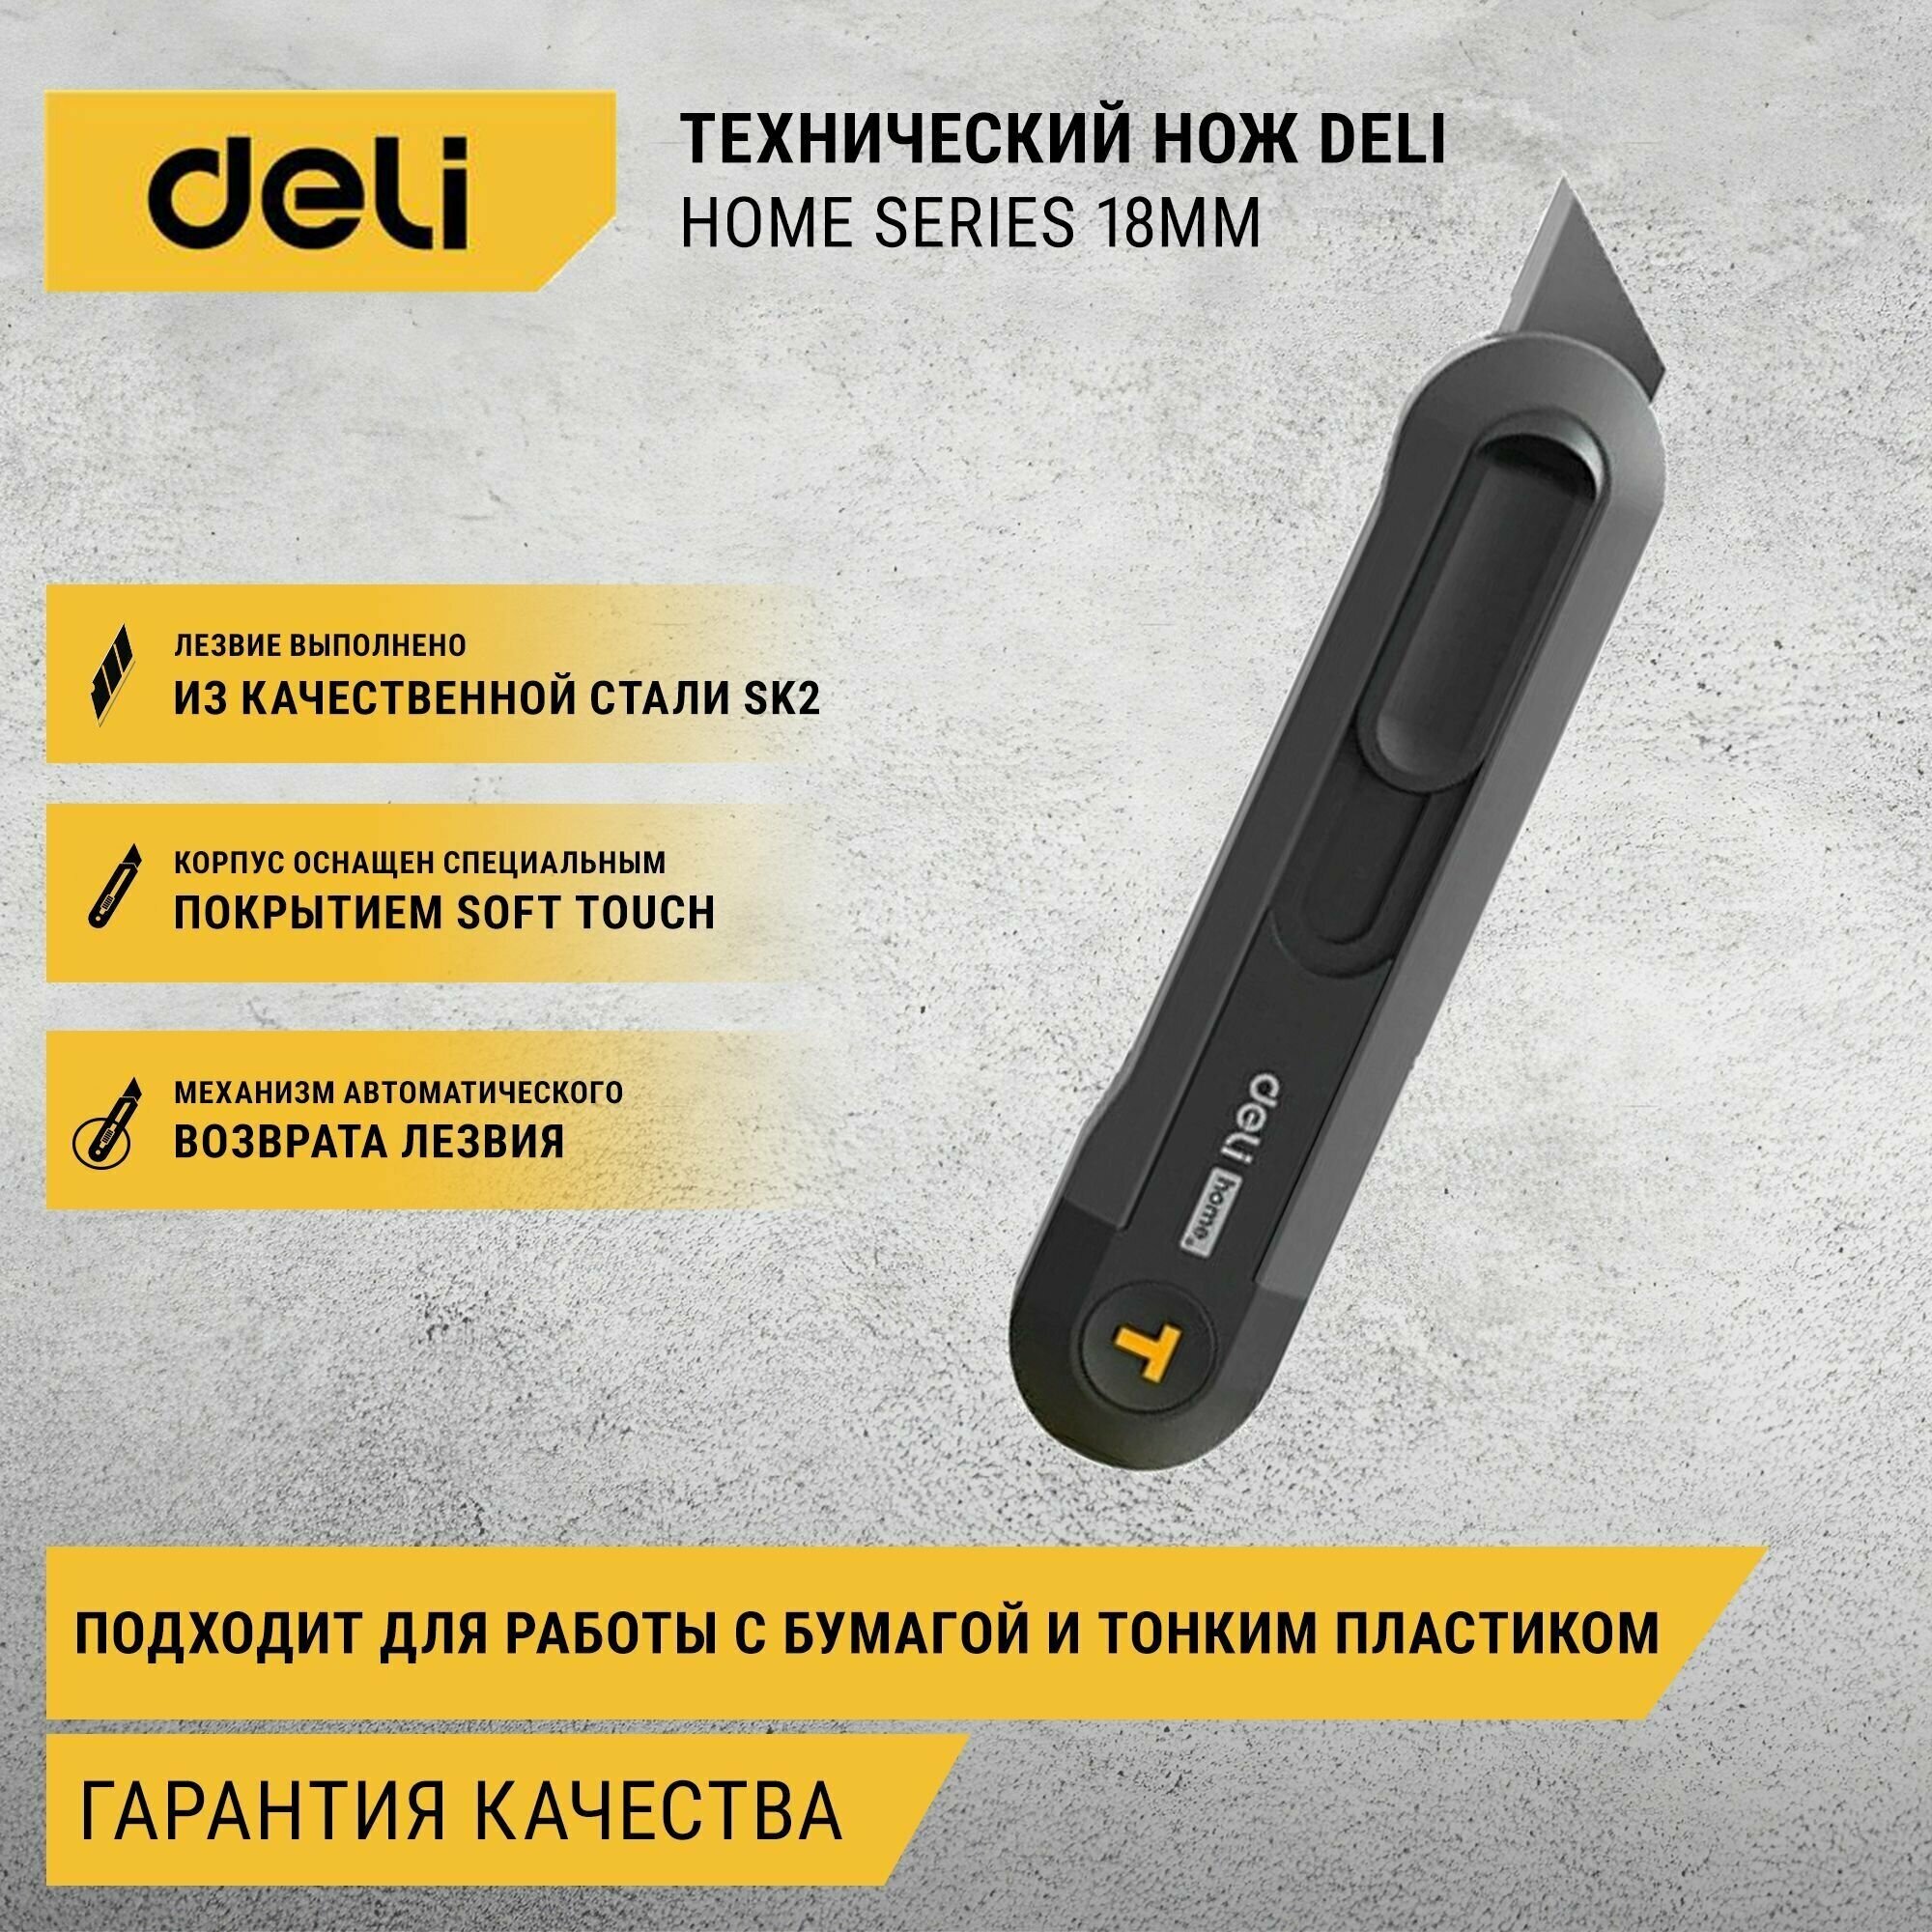 Технический нож "Home Series" Deli HT4008